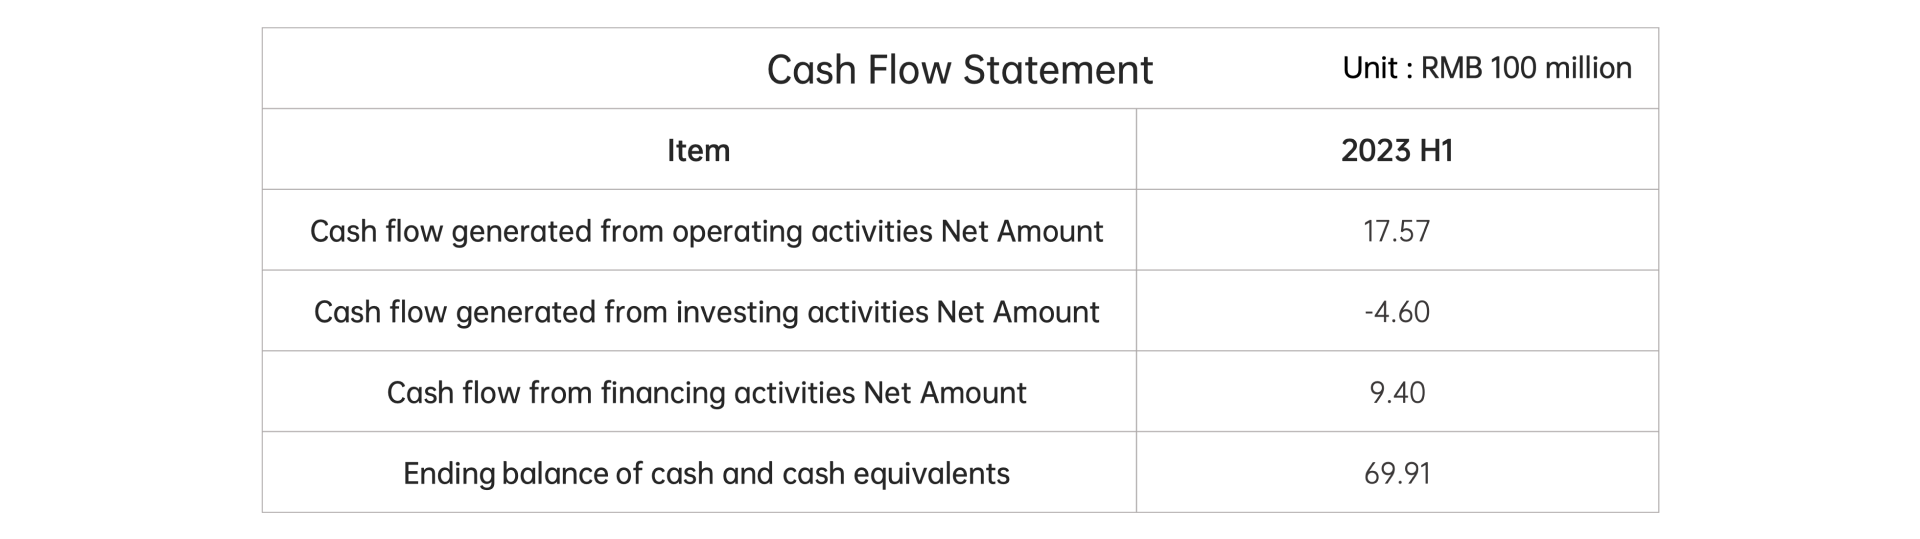 Cash Flow Statement Summary